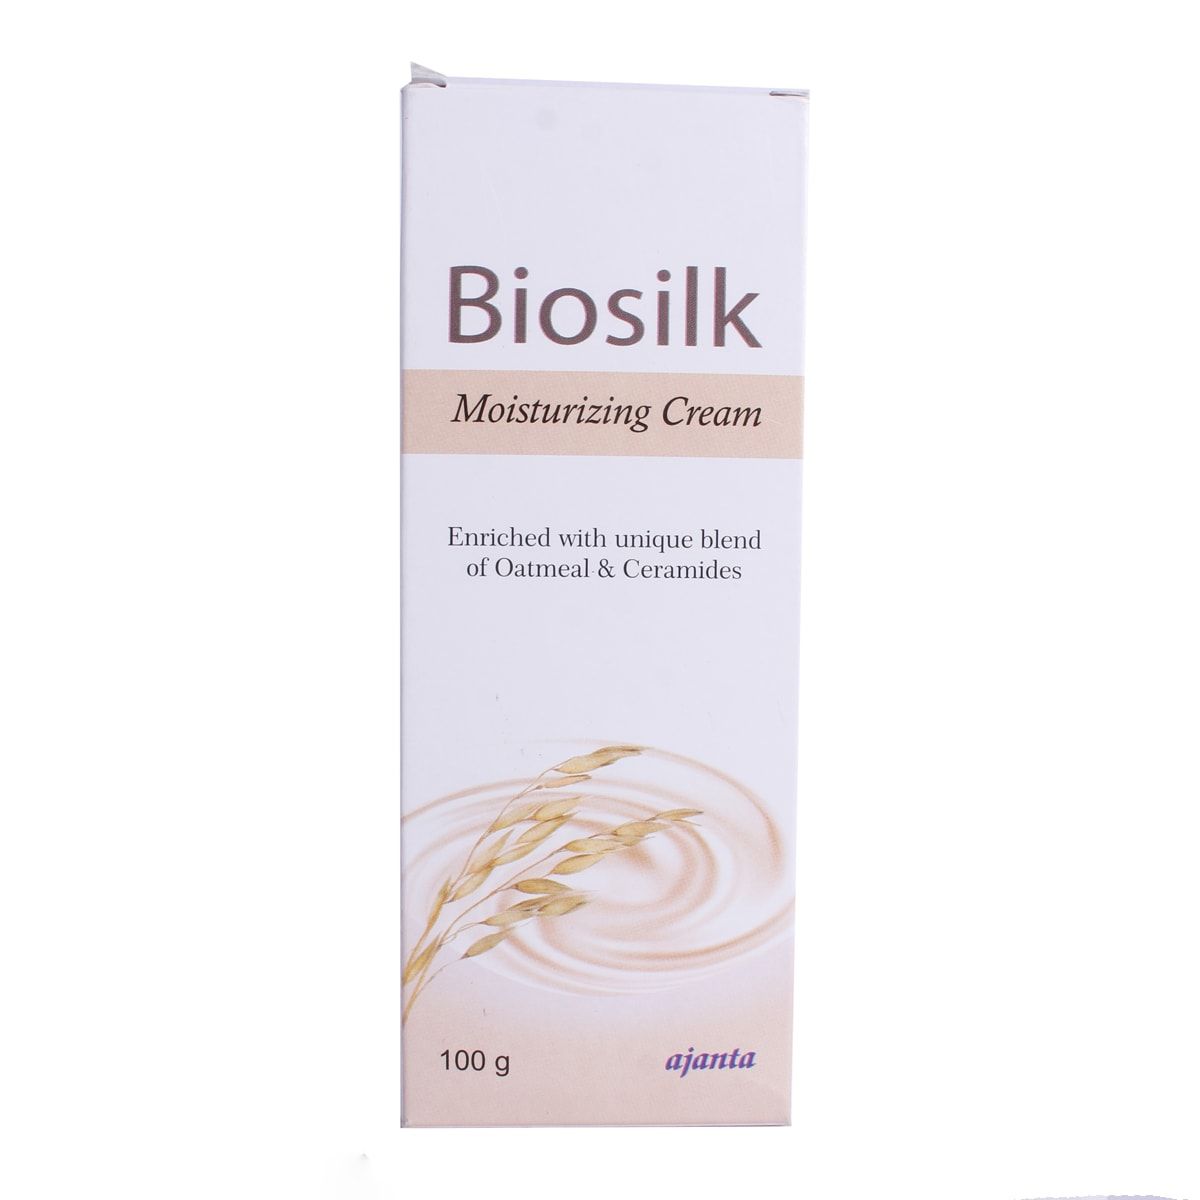 Biosilk Moisturizing Cream 100 gm, Pack of 1 